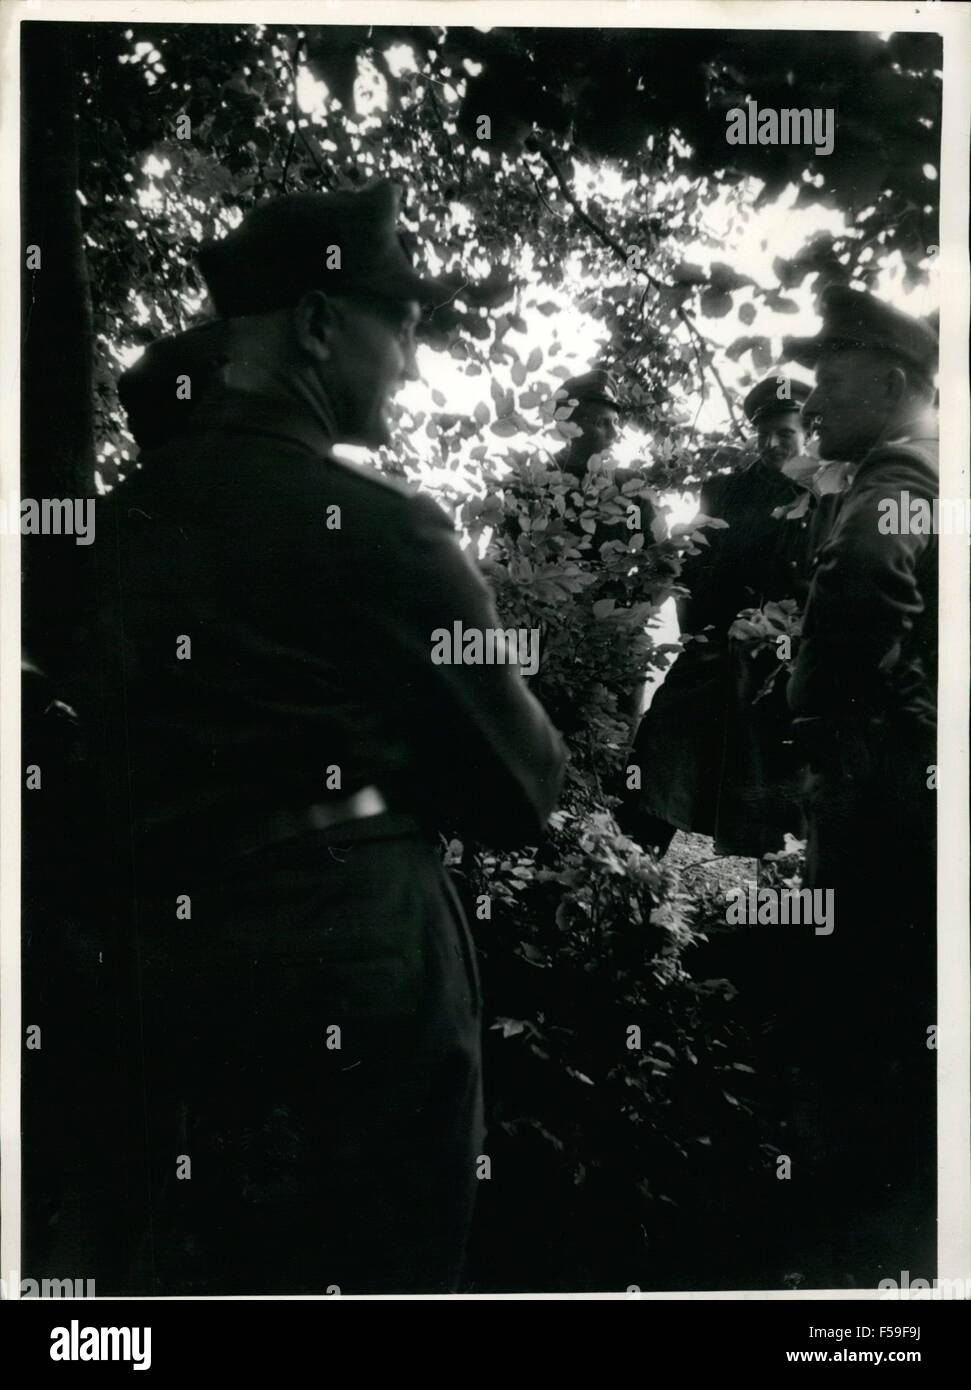 1962 - les travaux forestiers à la frontière de zone sous la protection de la police ; il y a quelques semaines, 4 agriculteurs du Weissenb près de runn Guanaco ont été arrêtés par la police alors qu'elles étaient au volant bois. Deux seulement ont été en mesure d'avoir une étroite évadé. Le troisième a été arrêté à Eisenach depuis des semaines et il n'y a pas la moindre trace de la quatrième. À partir de là les agriculteurs demandent l'Bundeagrenzachutz Allemand (Police fédérale des frontières) de protection lorsqu'ils doivent travailler dans la proximité de la ligne de bordure. Les photos montrent le transport de woodcat la frontière. La frontière de l'Allemagne de l'ouest trop de soldats Banque D'Images